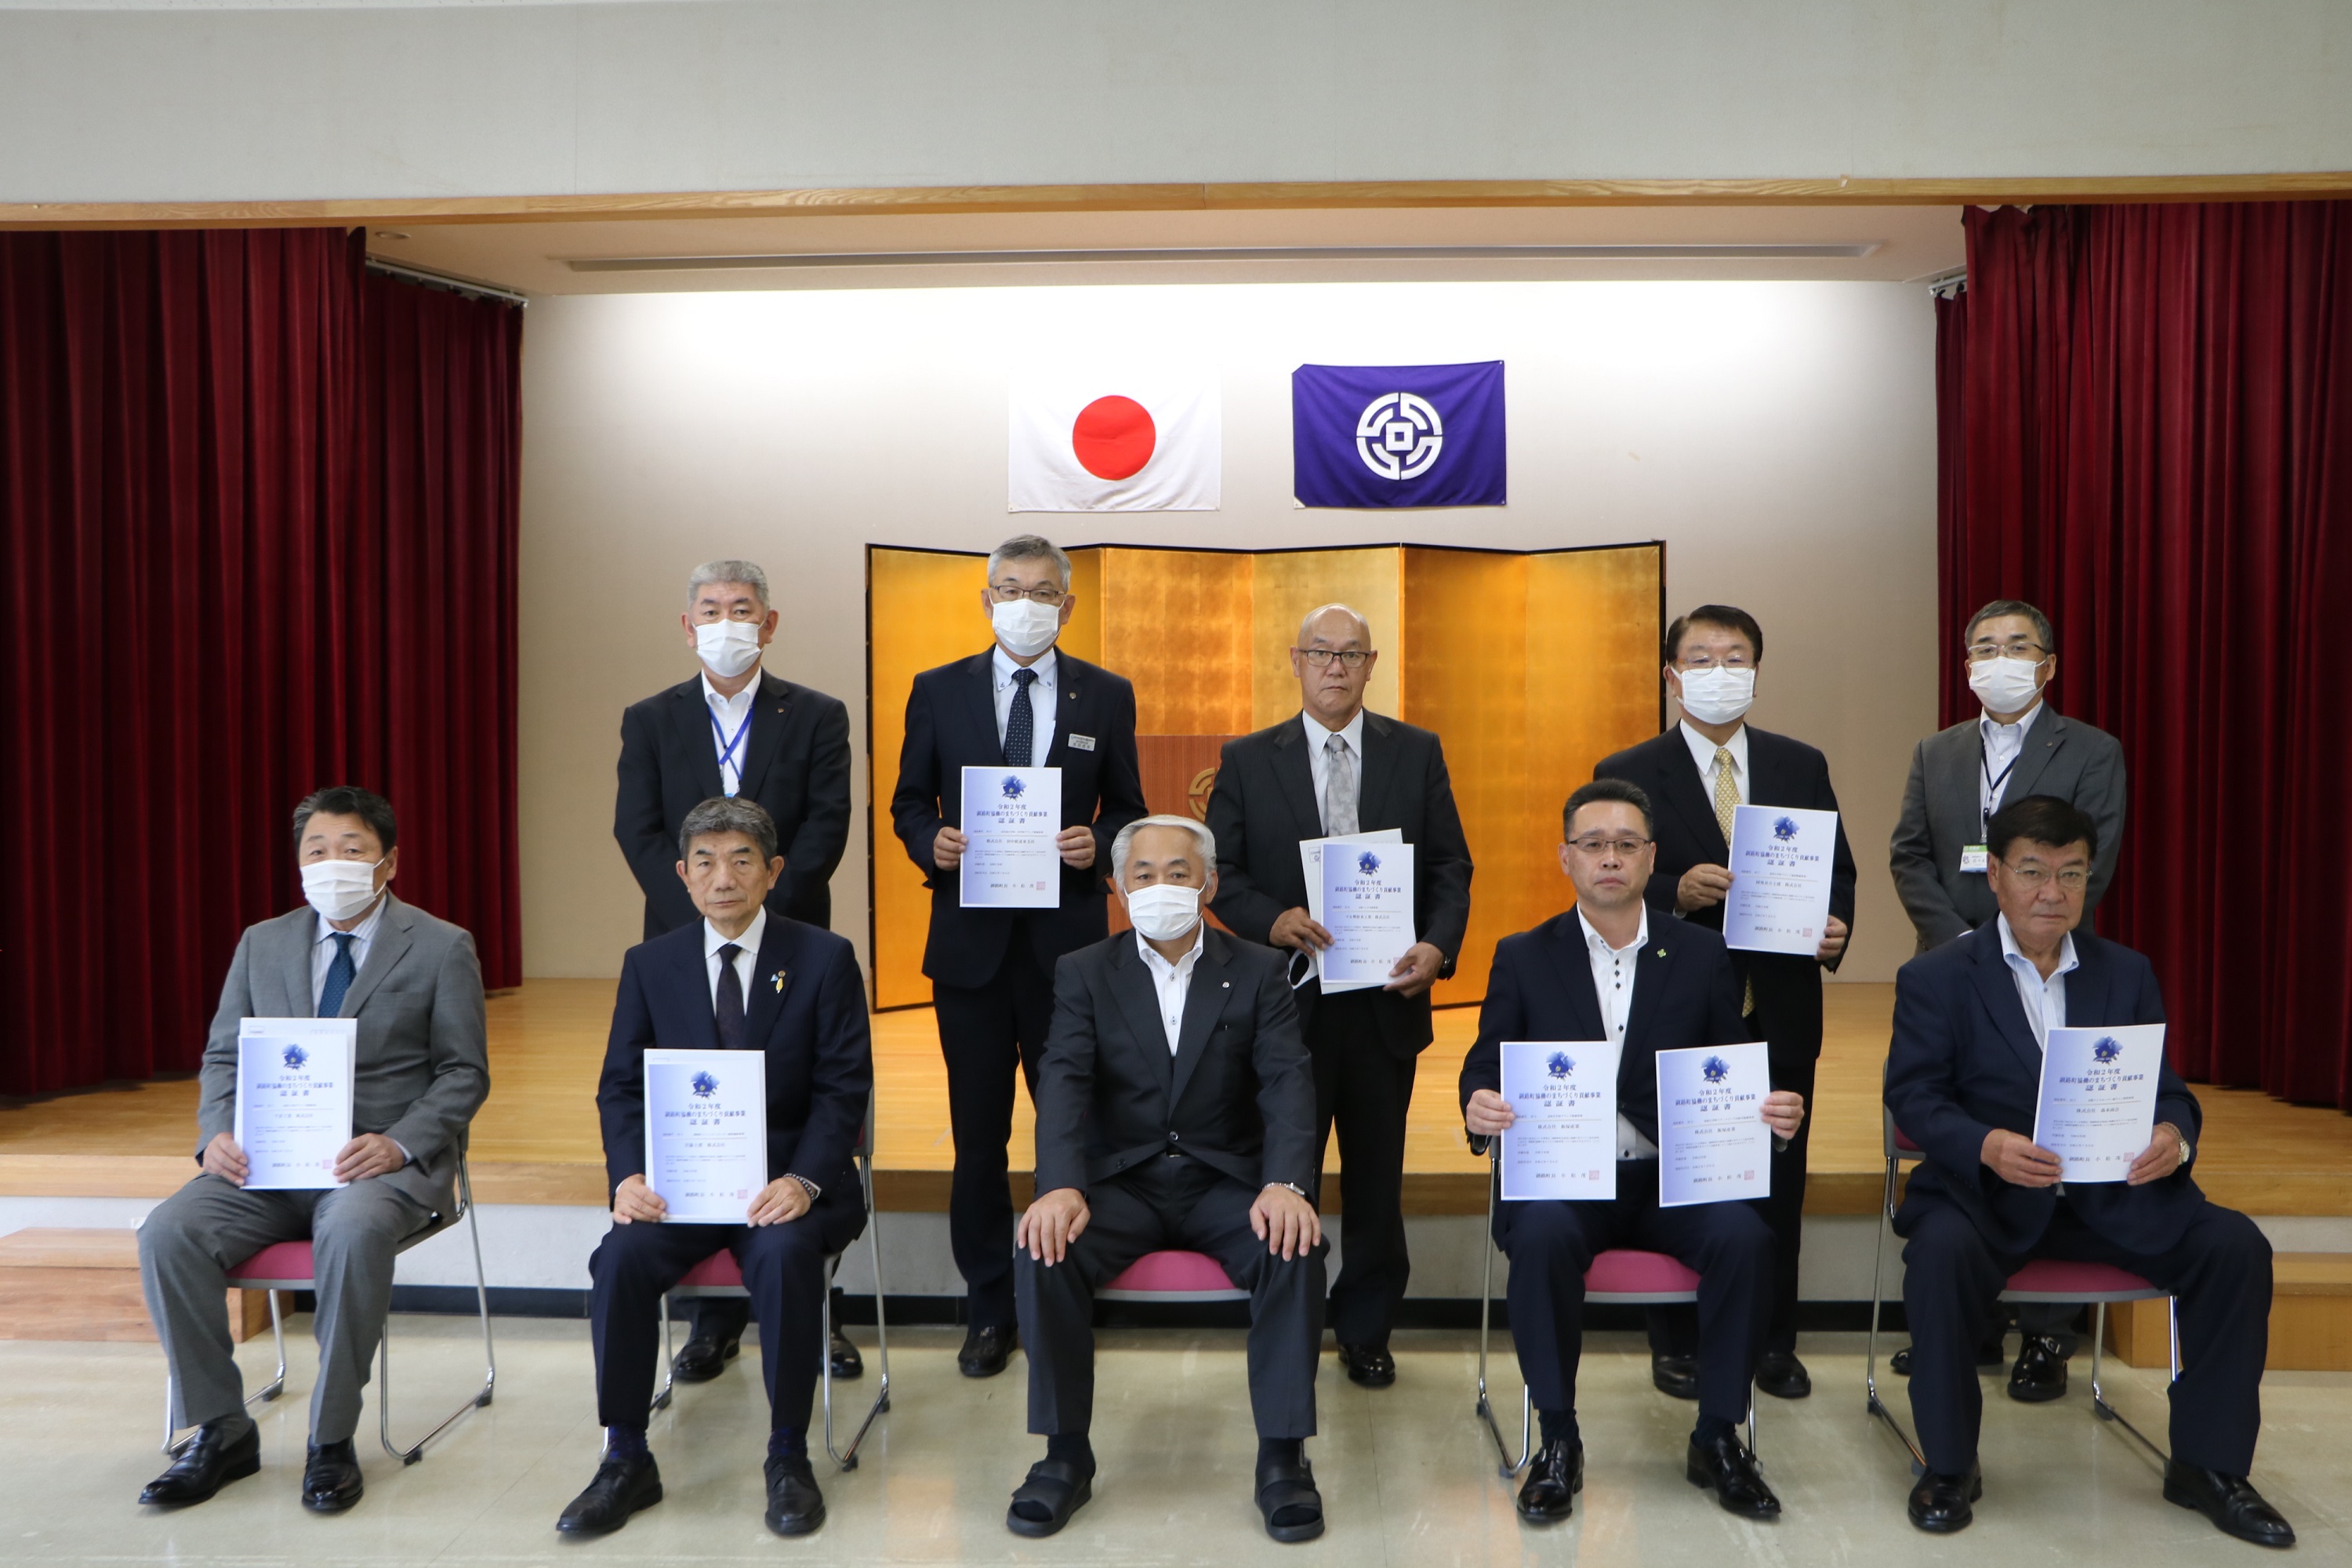 釧路町協働のまちづくり貢献事業認証書交付式で7事業所に認証書を交付